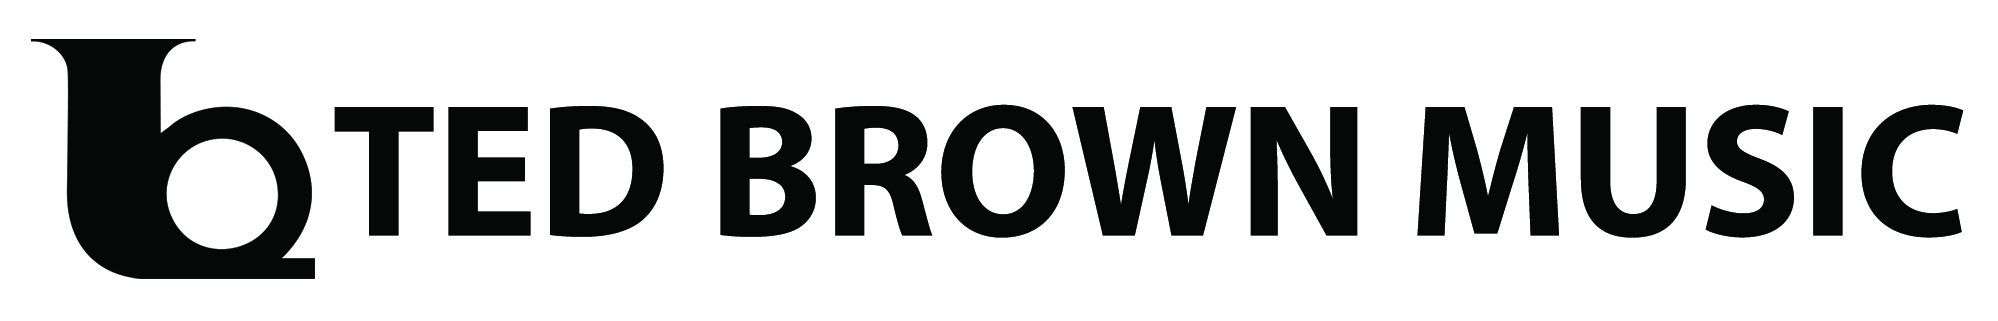 tedbrownmusic Logo